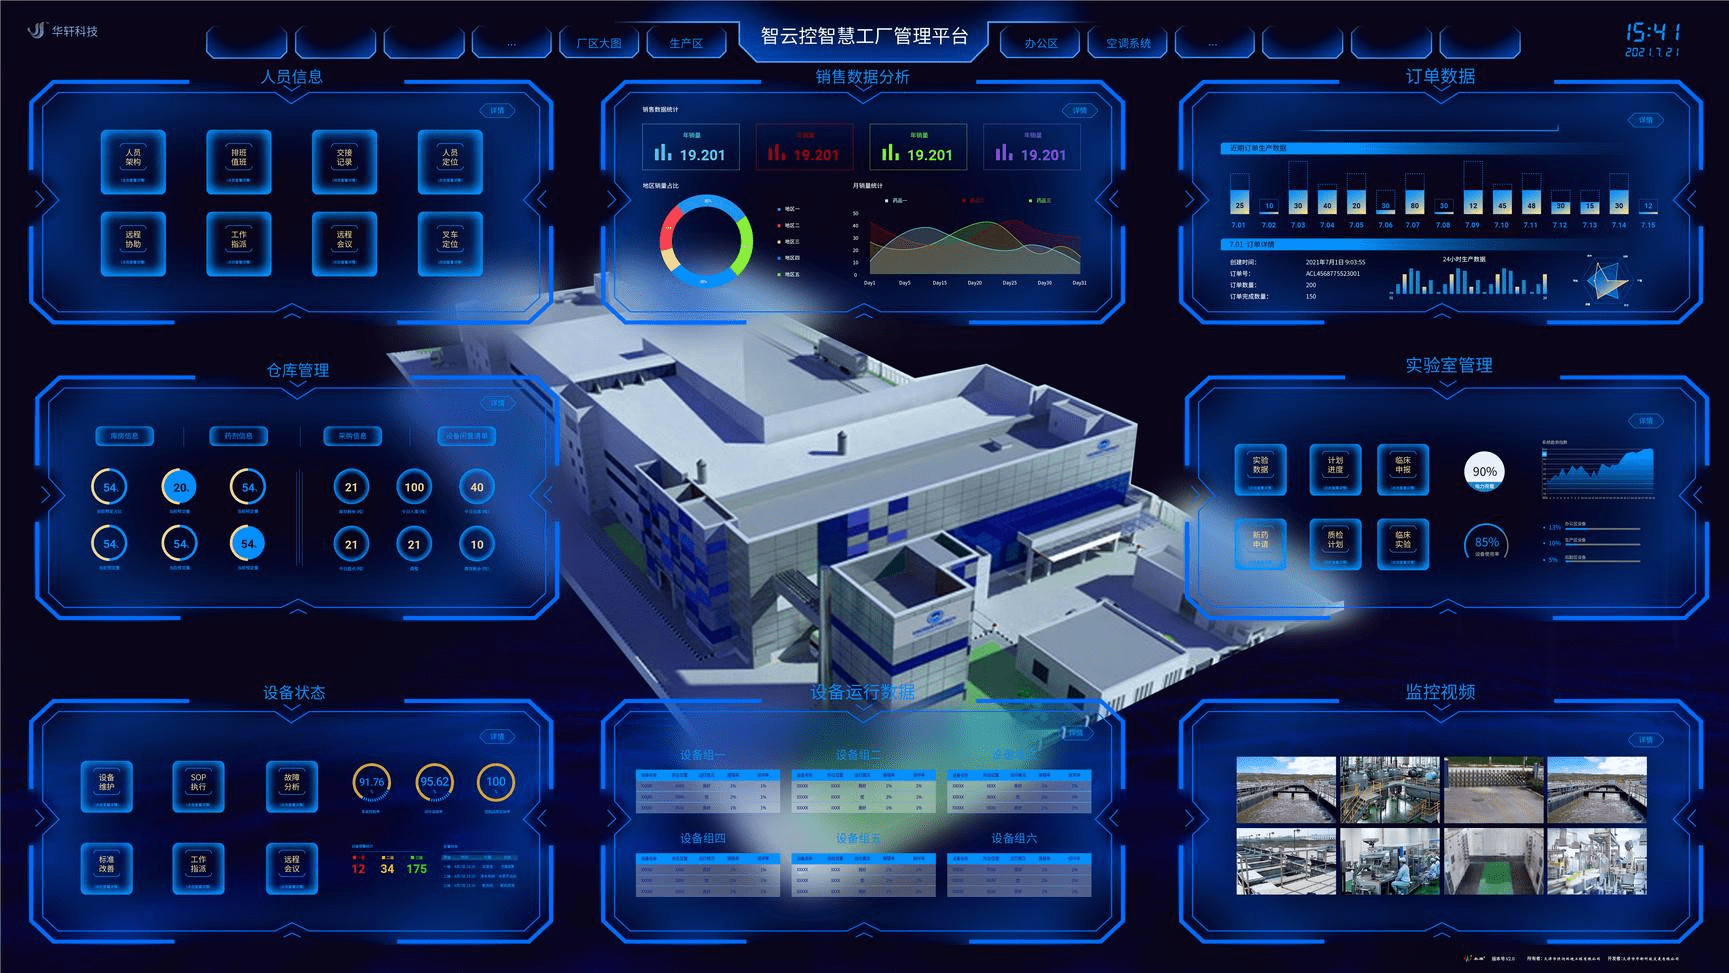 智云控cic智慧工厂管理平台是以虚拟仿真为基础,绿色节能.